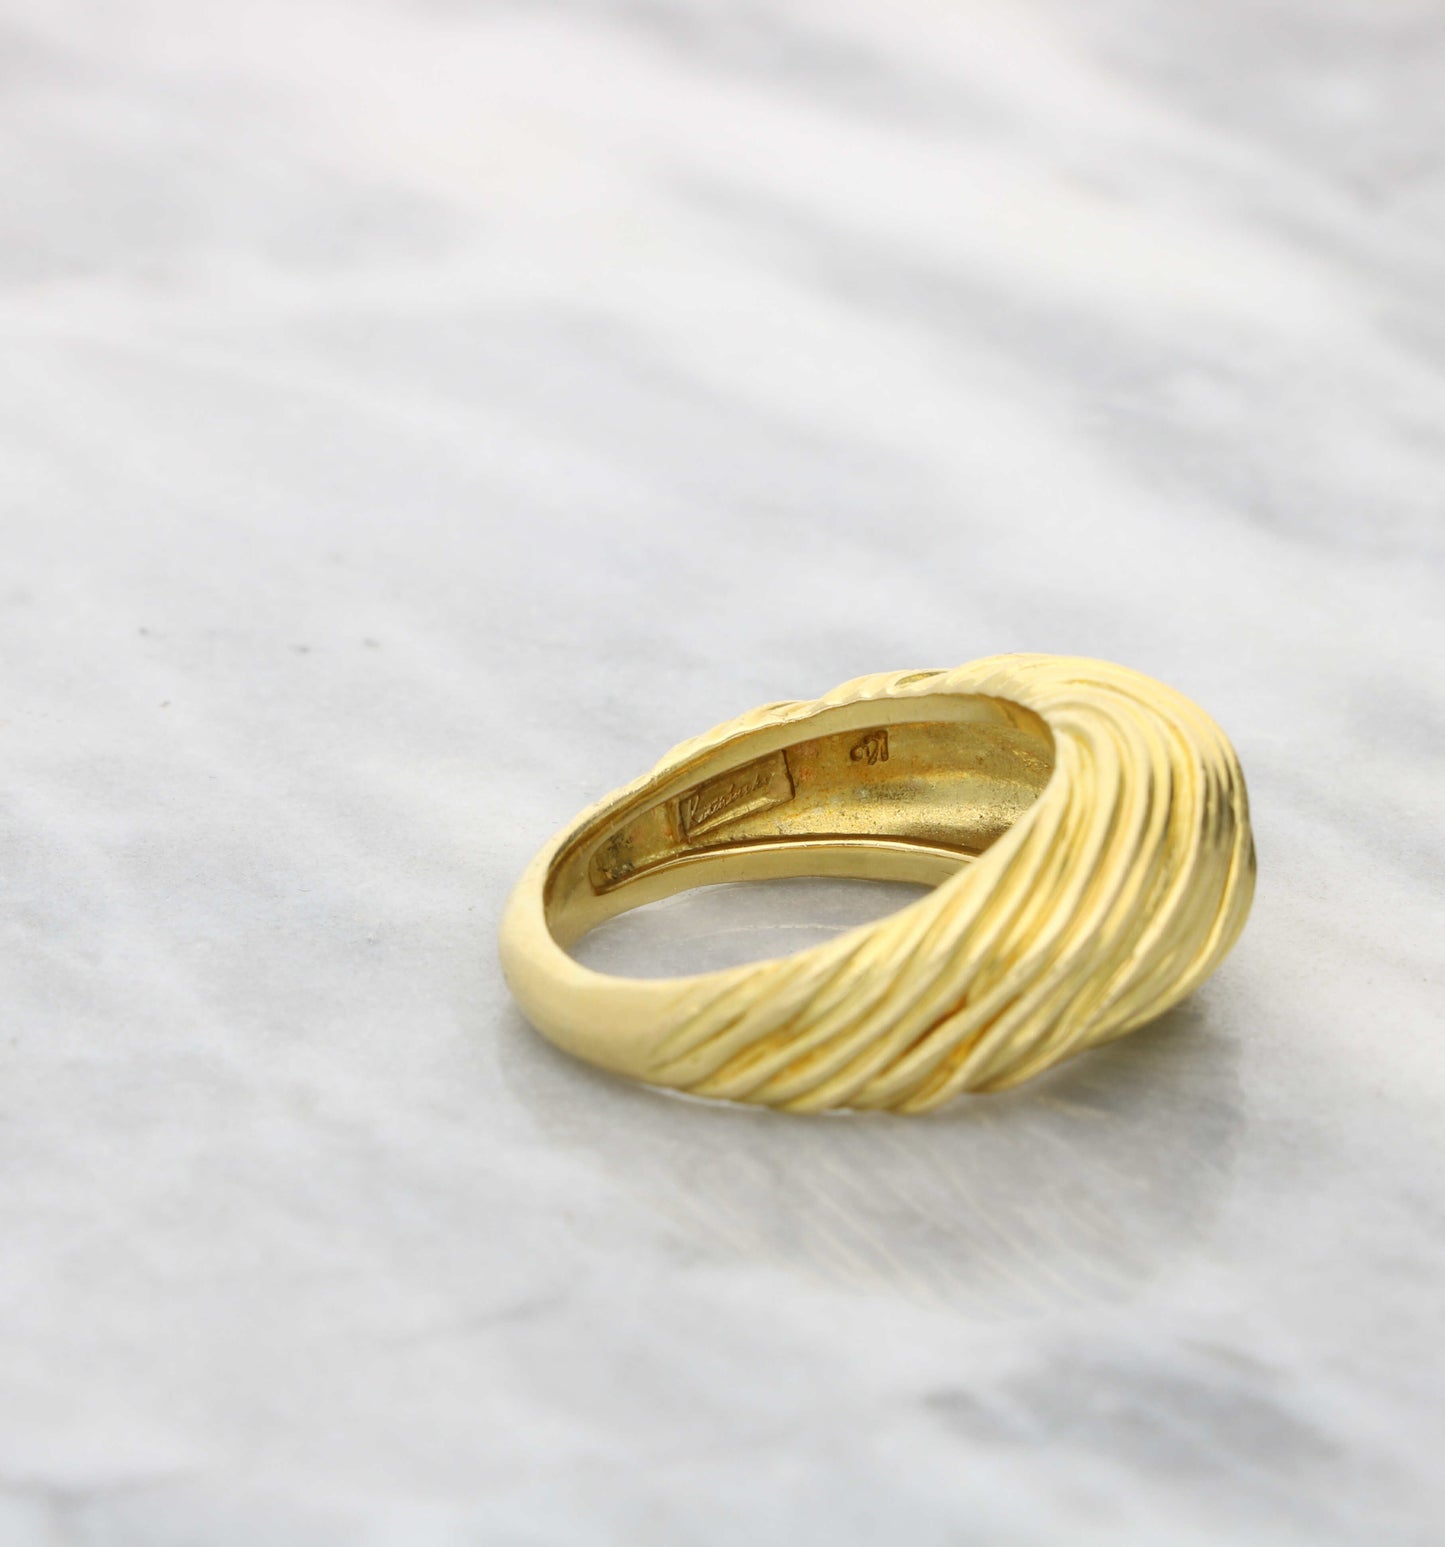 18ct Kutchinsky swirl ring